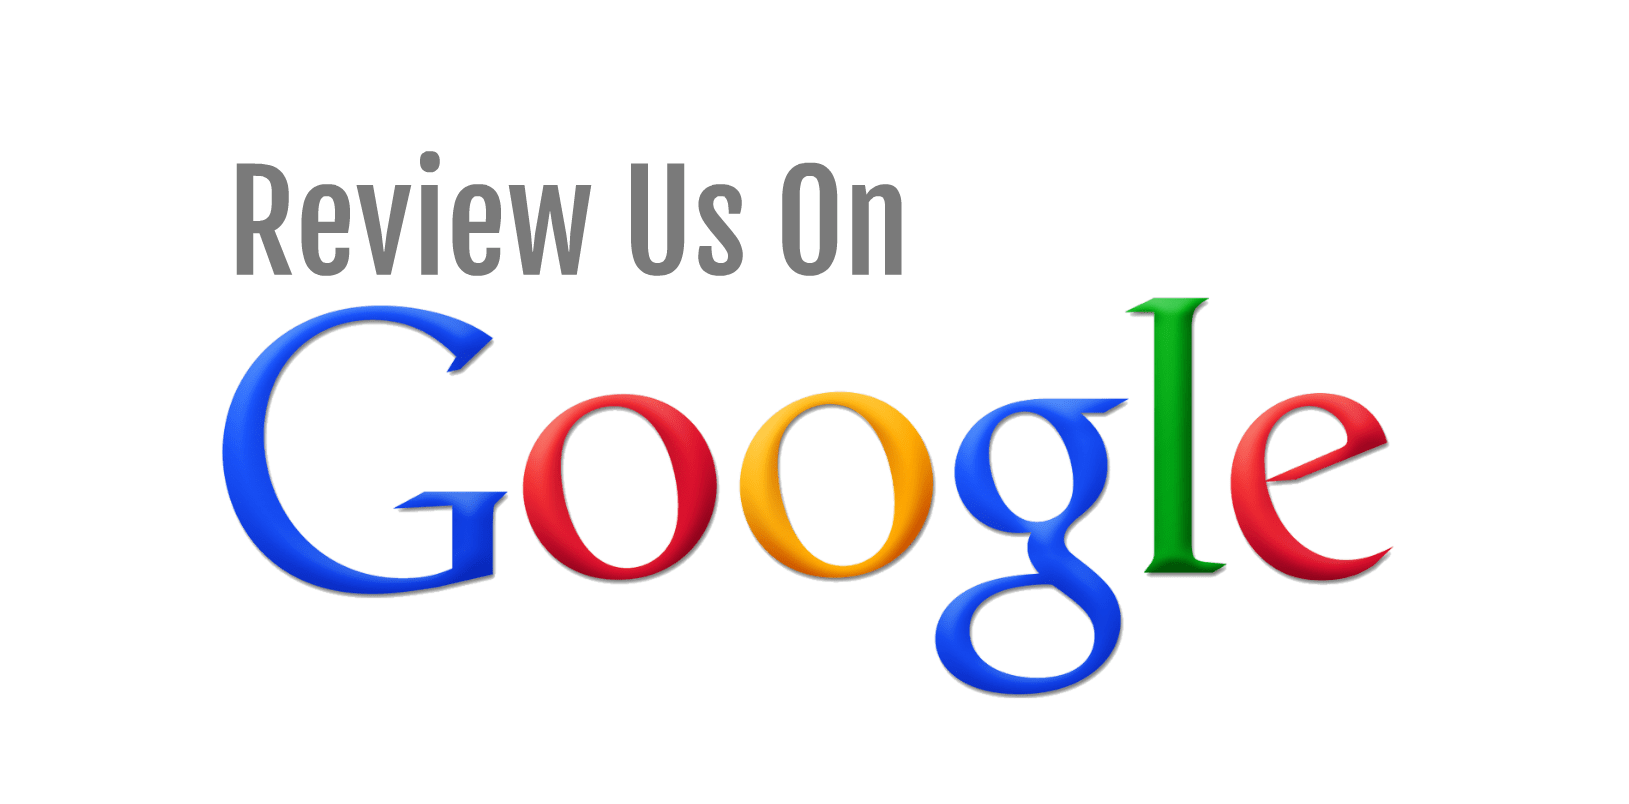 Review Beaulieu Home Improvement on Google